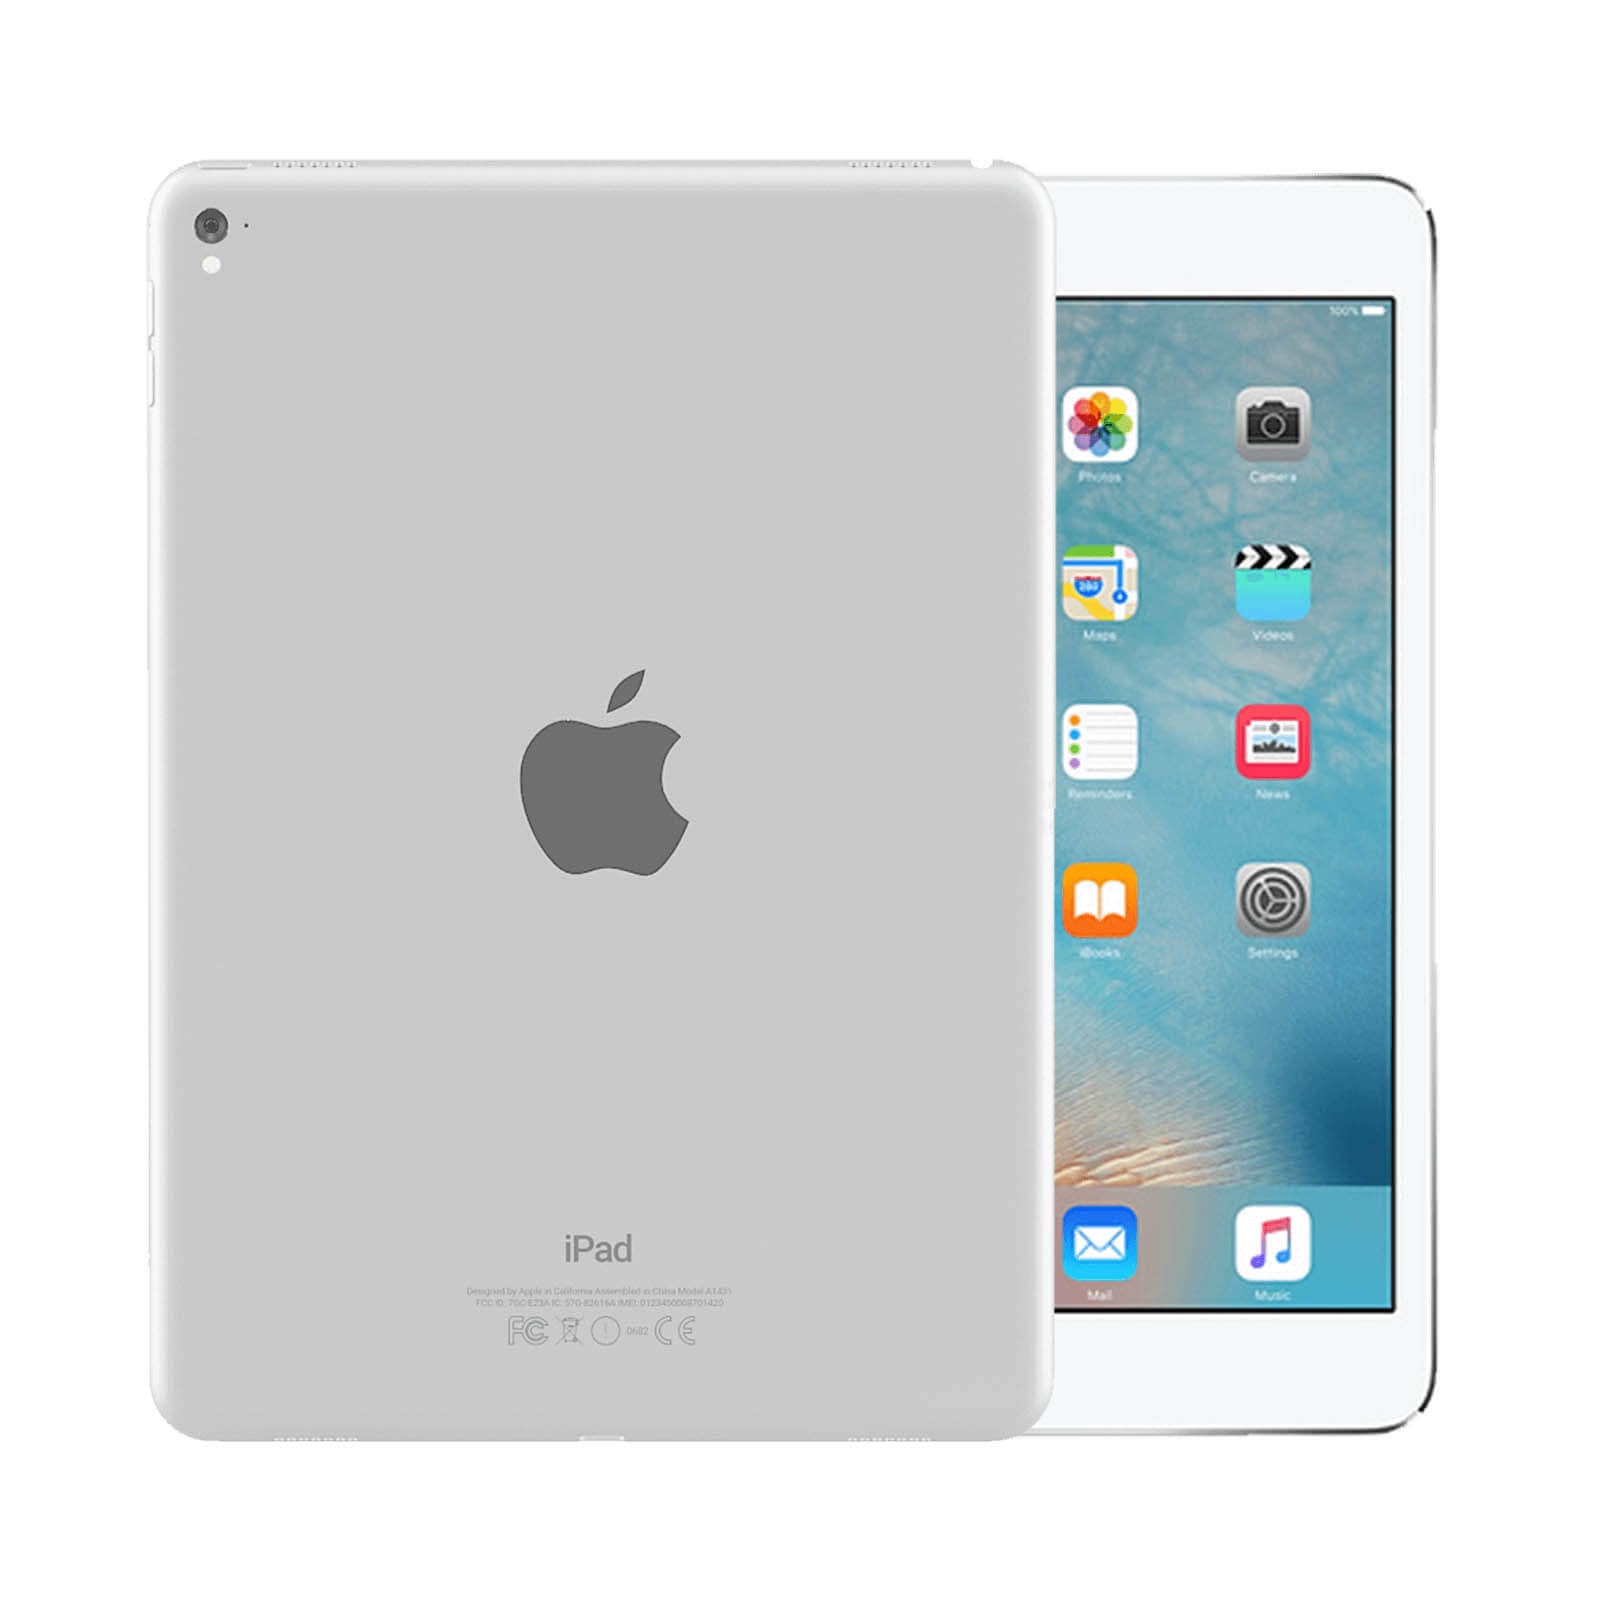 iPad Pro 9.7 Inch 256GB Silver Very Good - WiFi